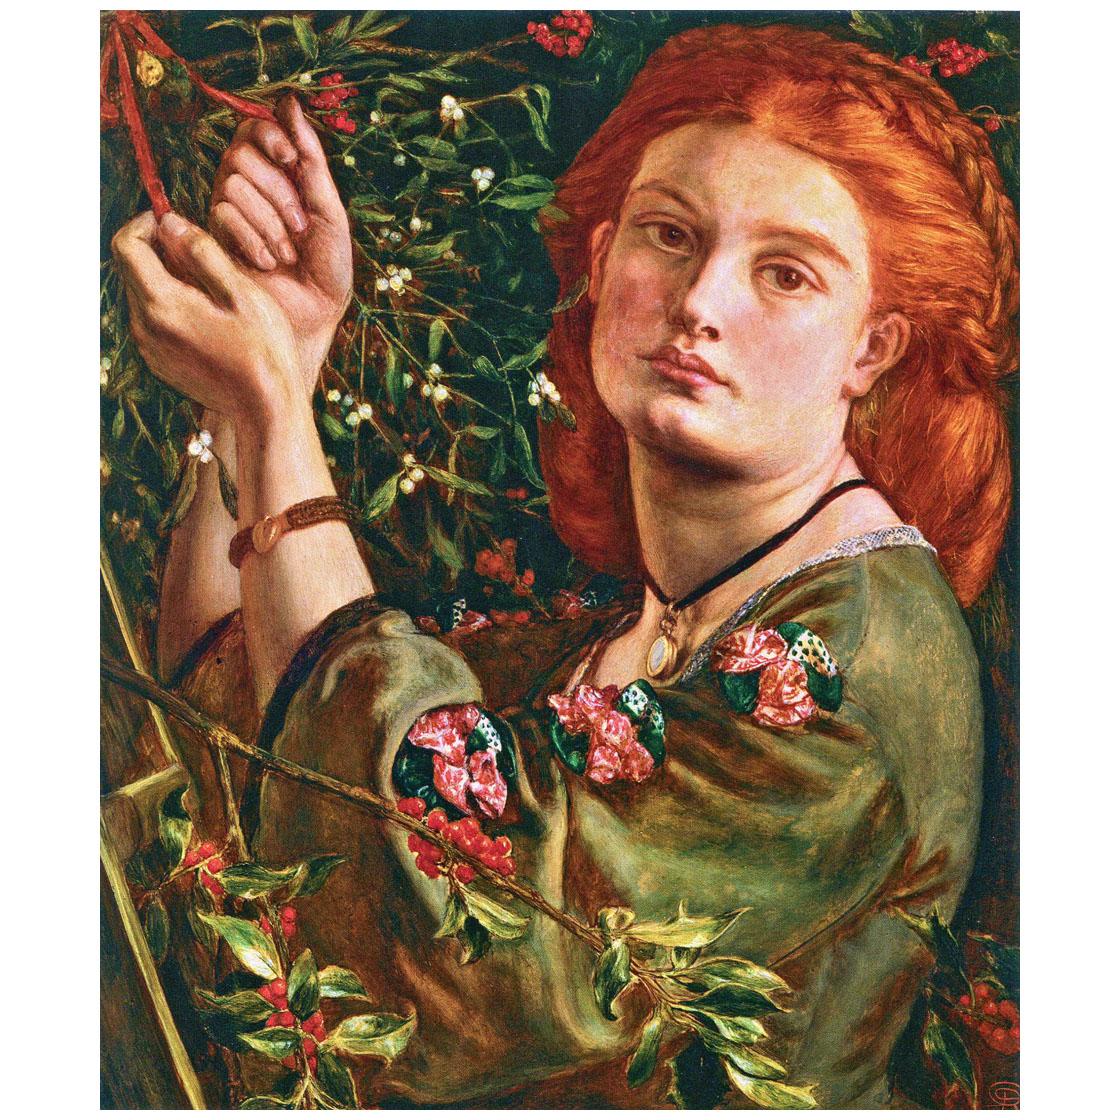 Dante Gabriel Rossetti. The Farmer’s Daughter. 1860. Private collection